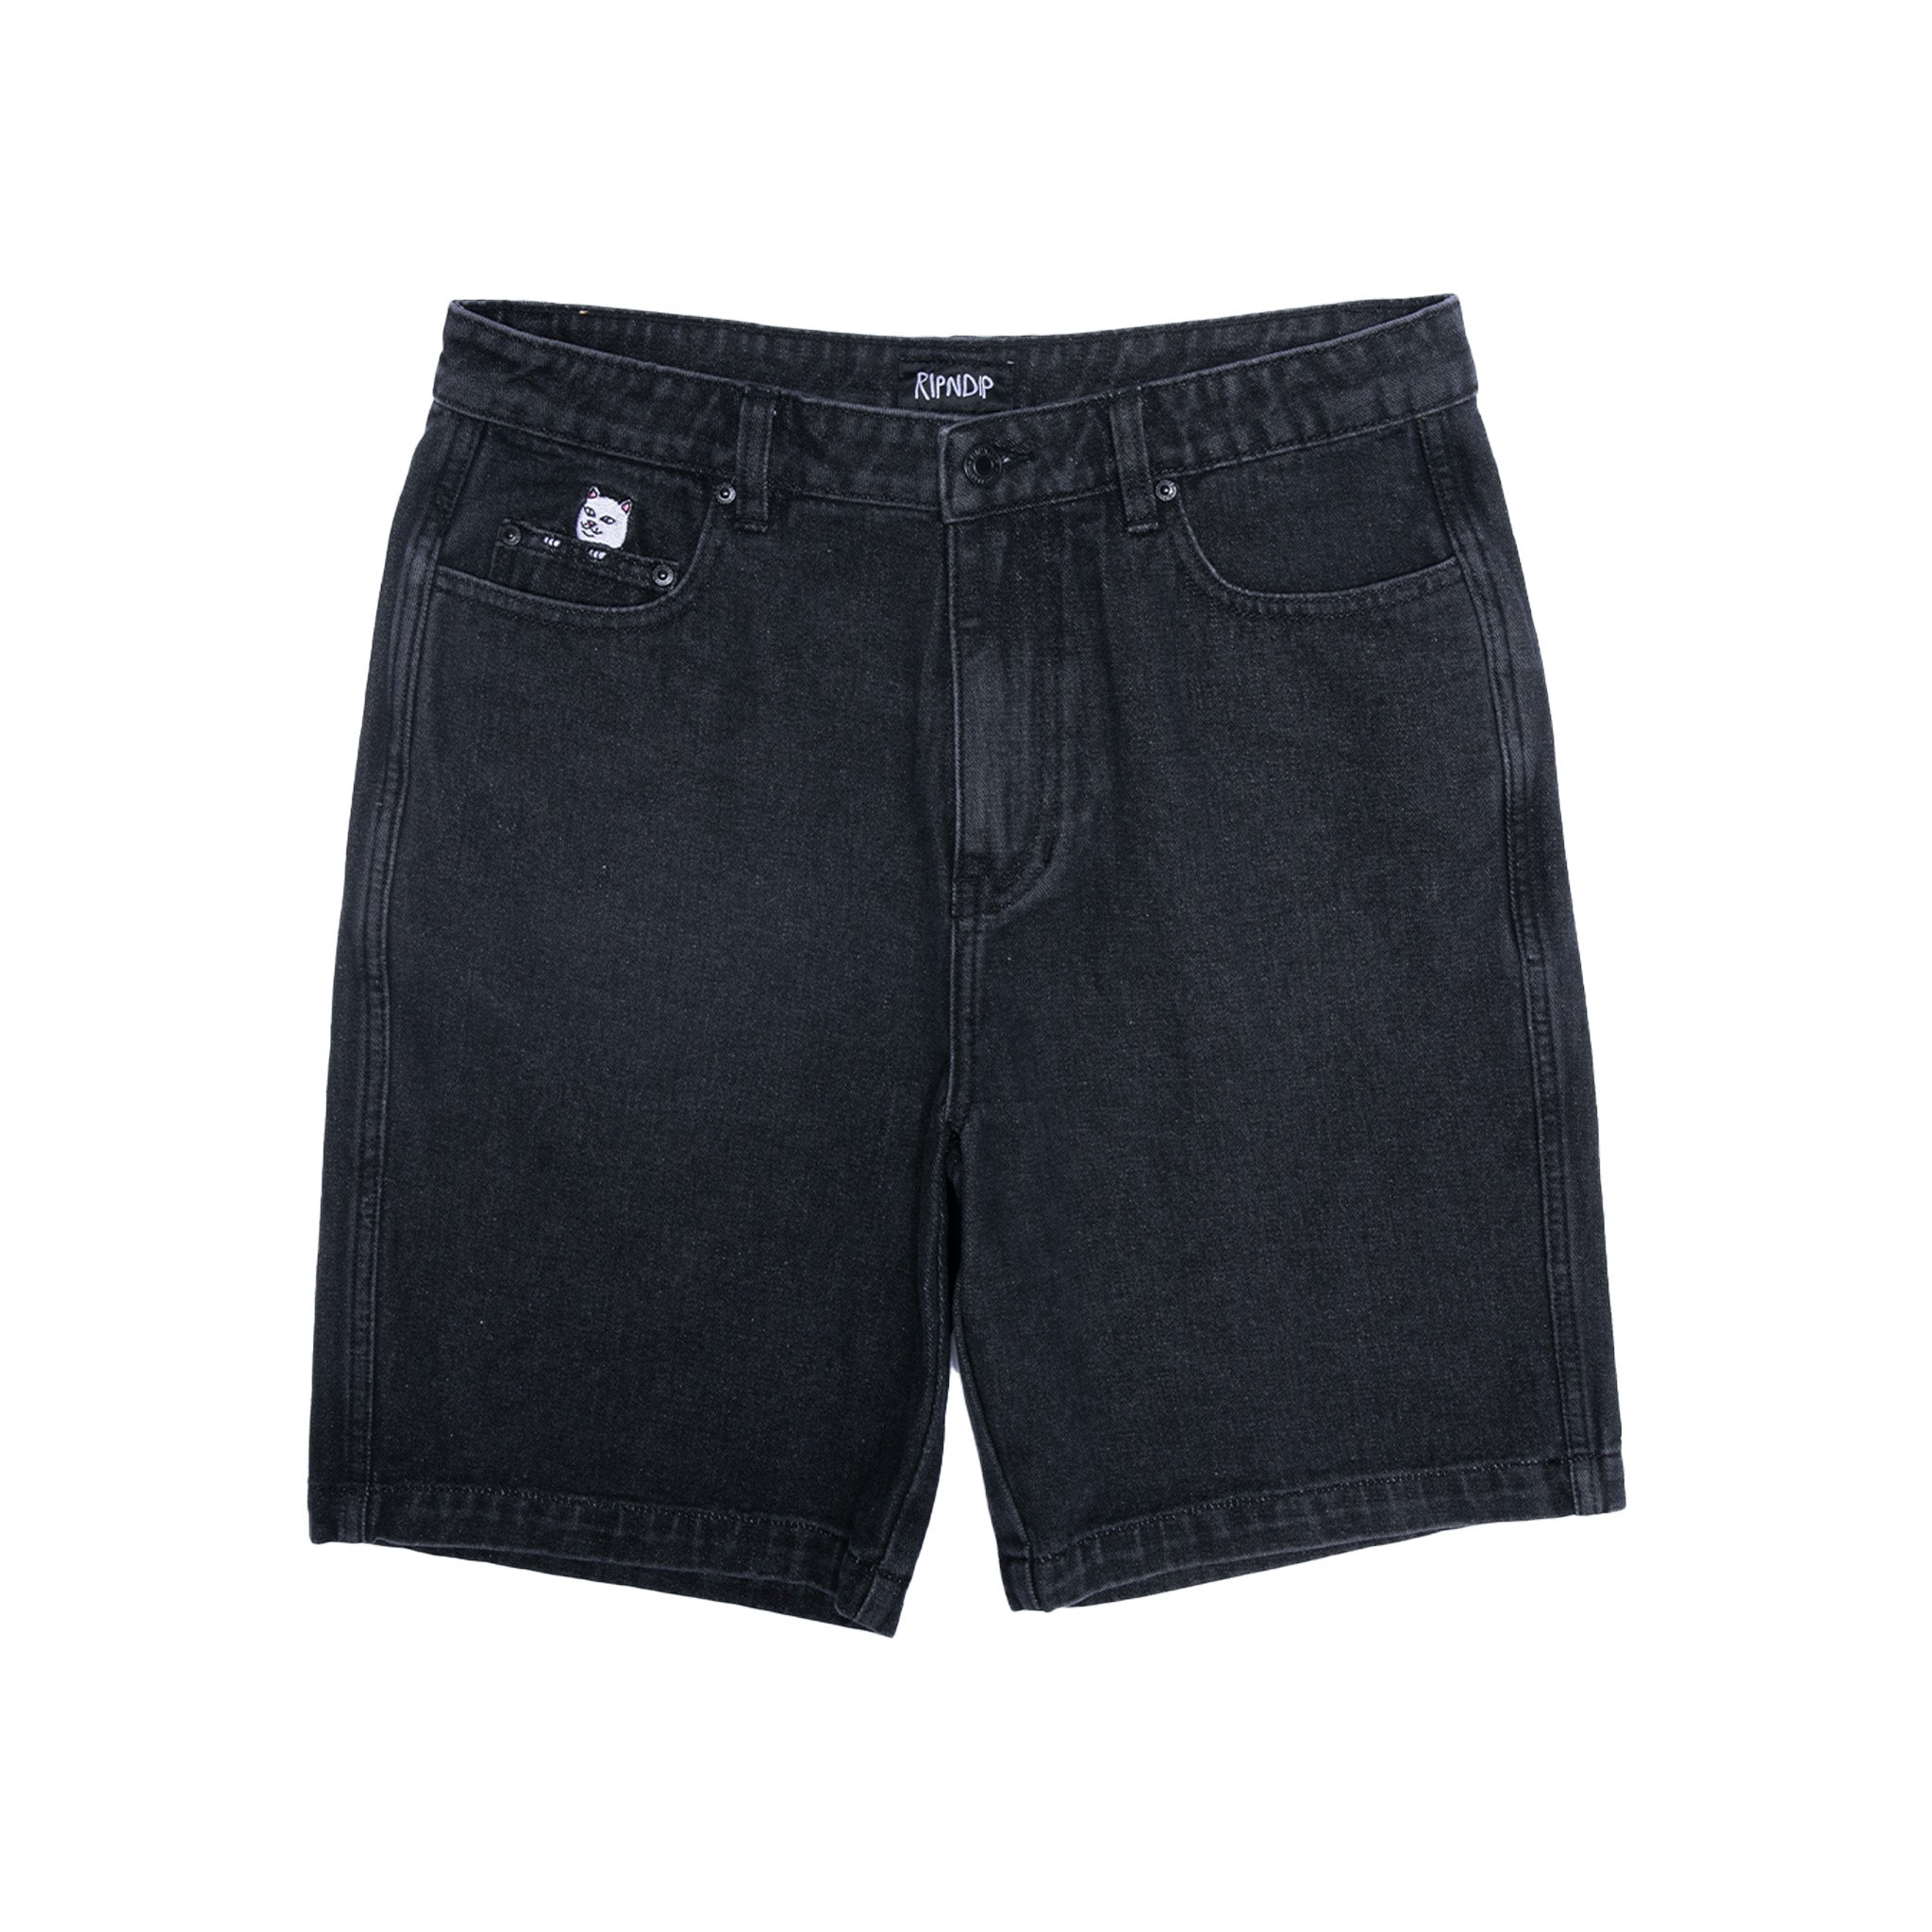 RIPNDIP La Brea Denim Shorts (Black Medium Wash)